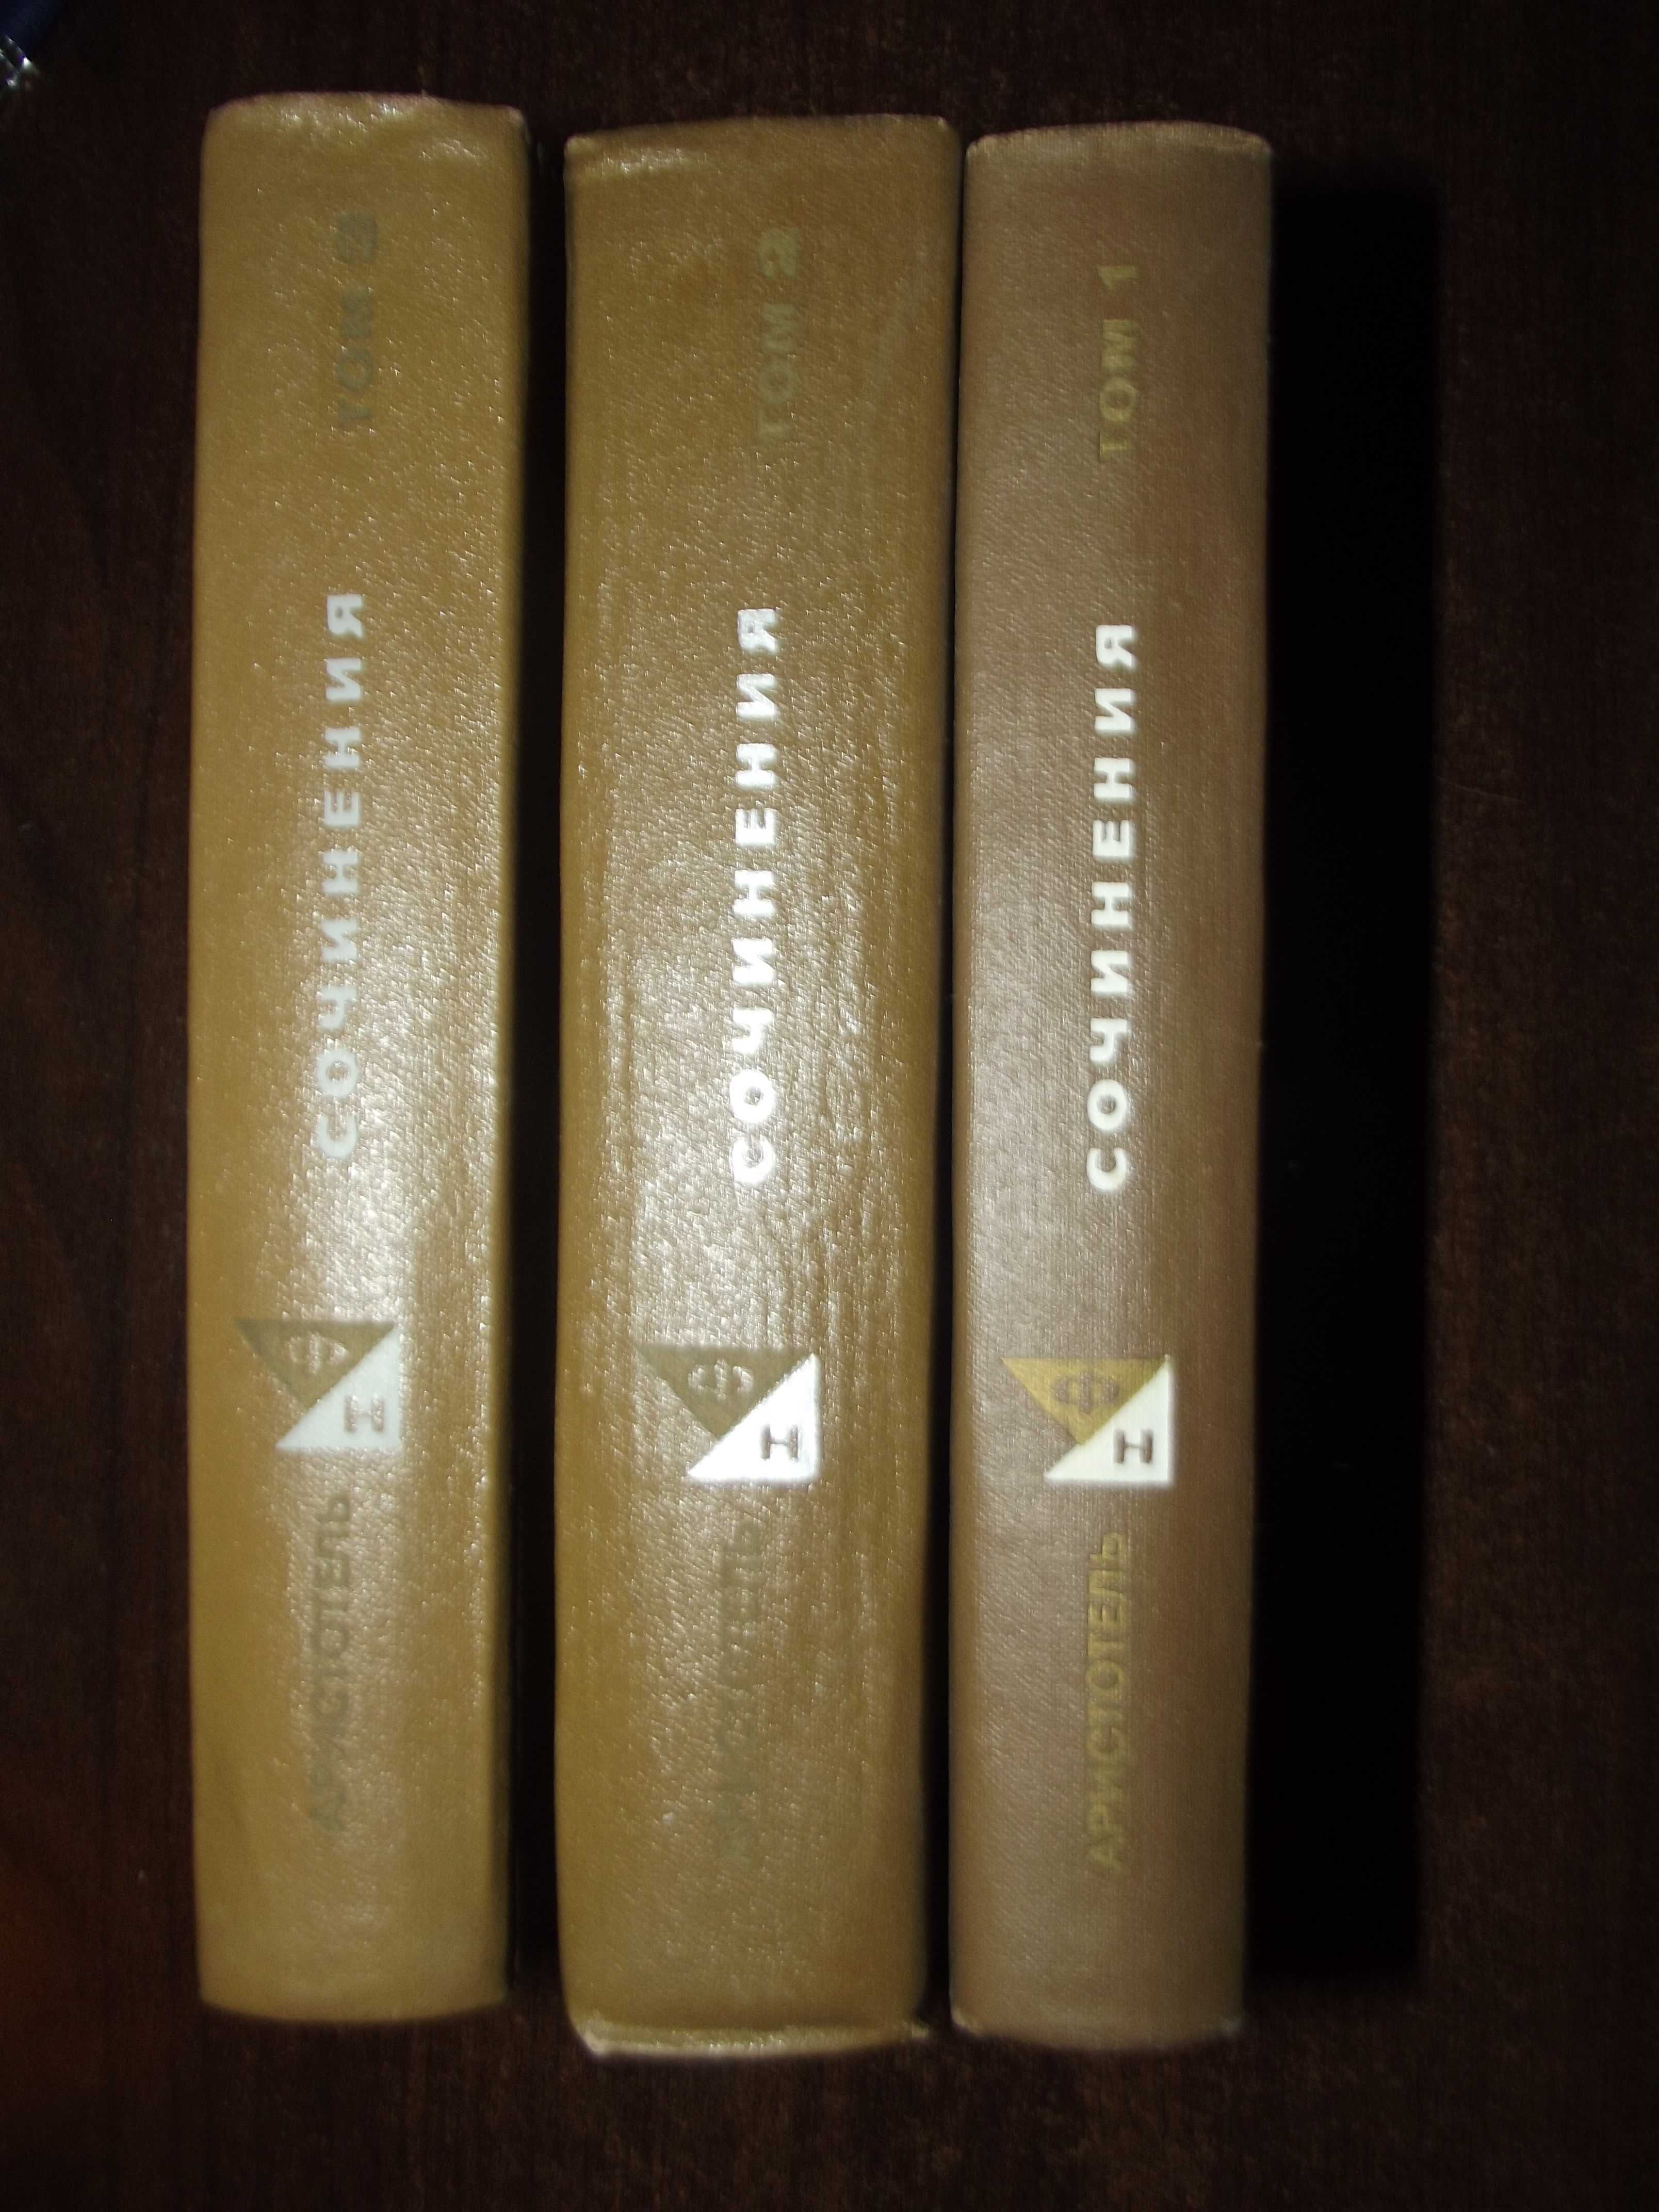 Библиотека приключений '" рамка" Аристотель 3 тома.